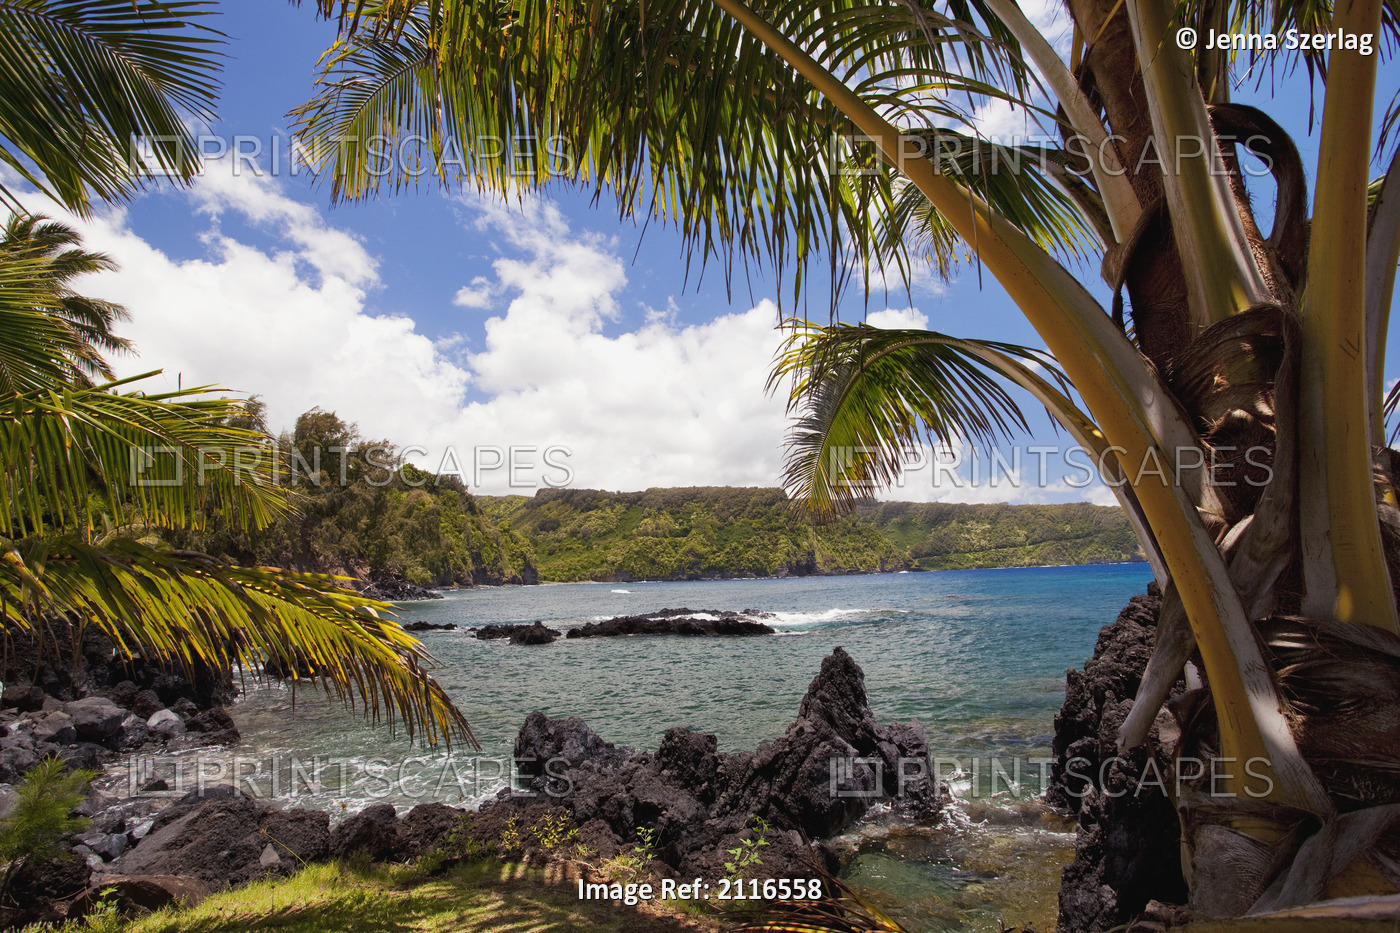 Hawaii, Maui, Keanae, Sunny blue skies light up the lush coast with palm trees.